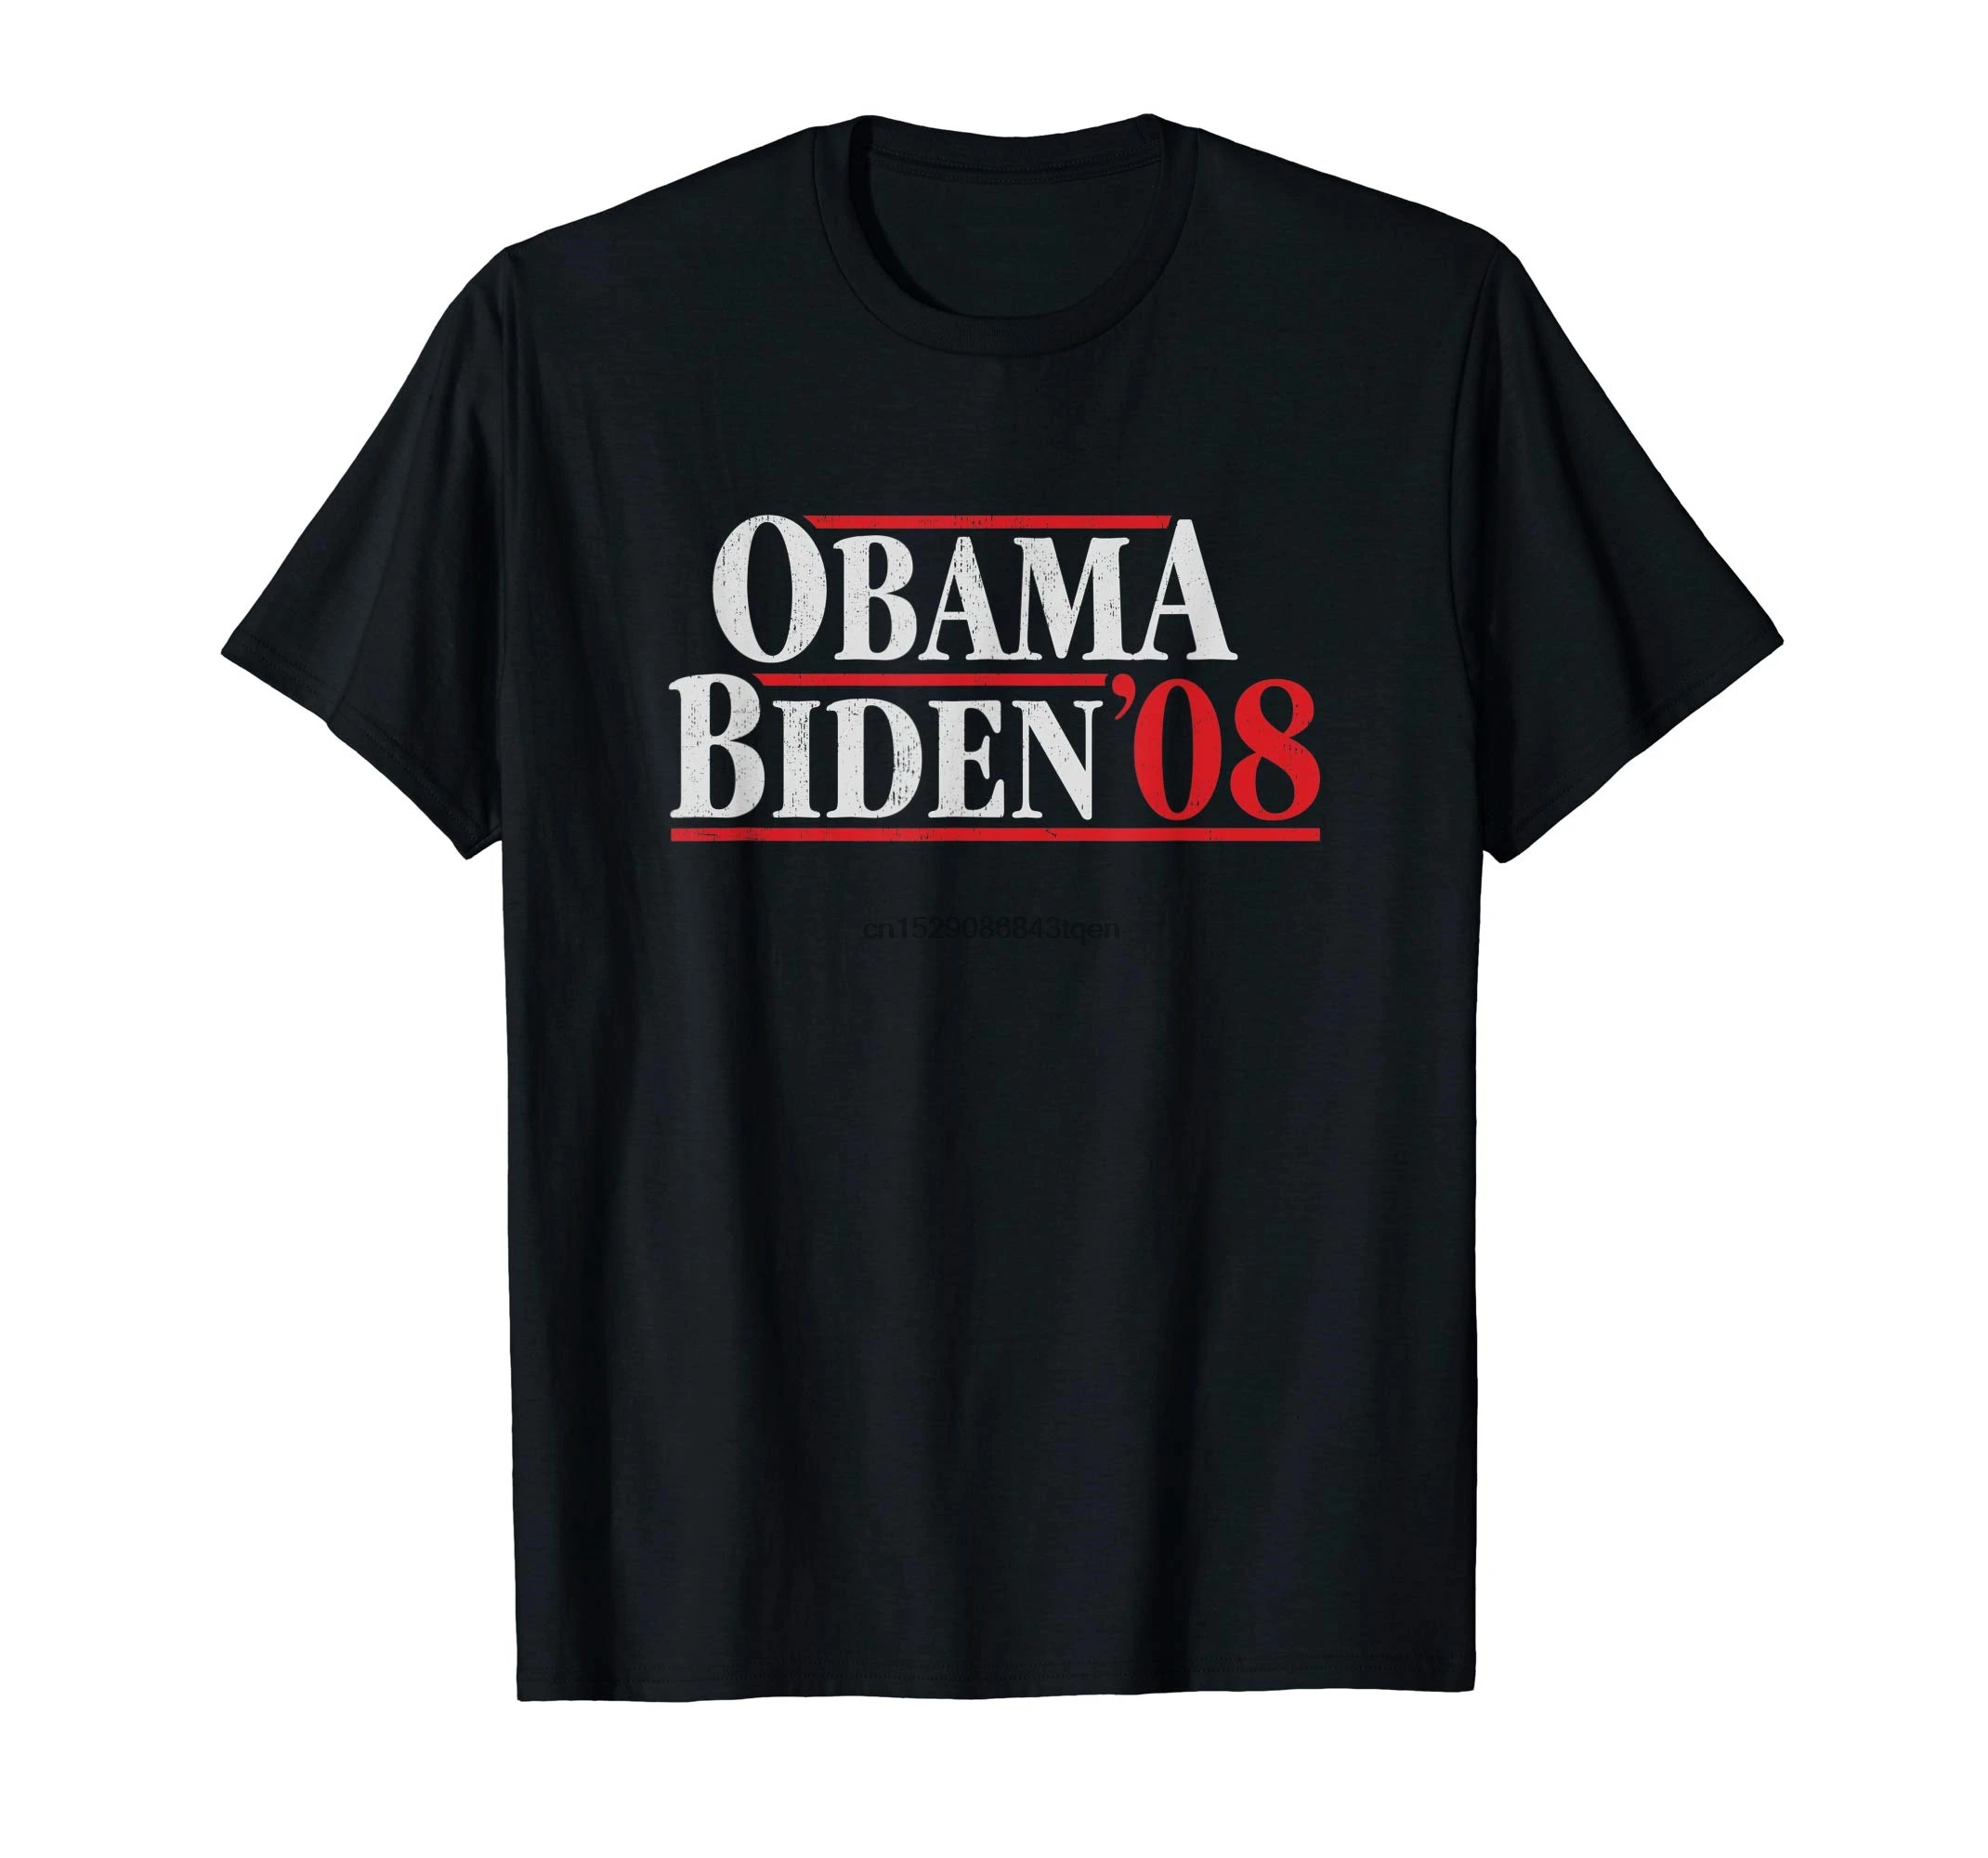 Обама 08 рубашка-Ретро-акция biен-Мужская Футболка-черный | Мужская одежда